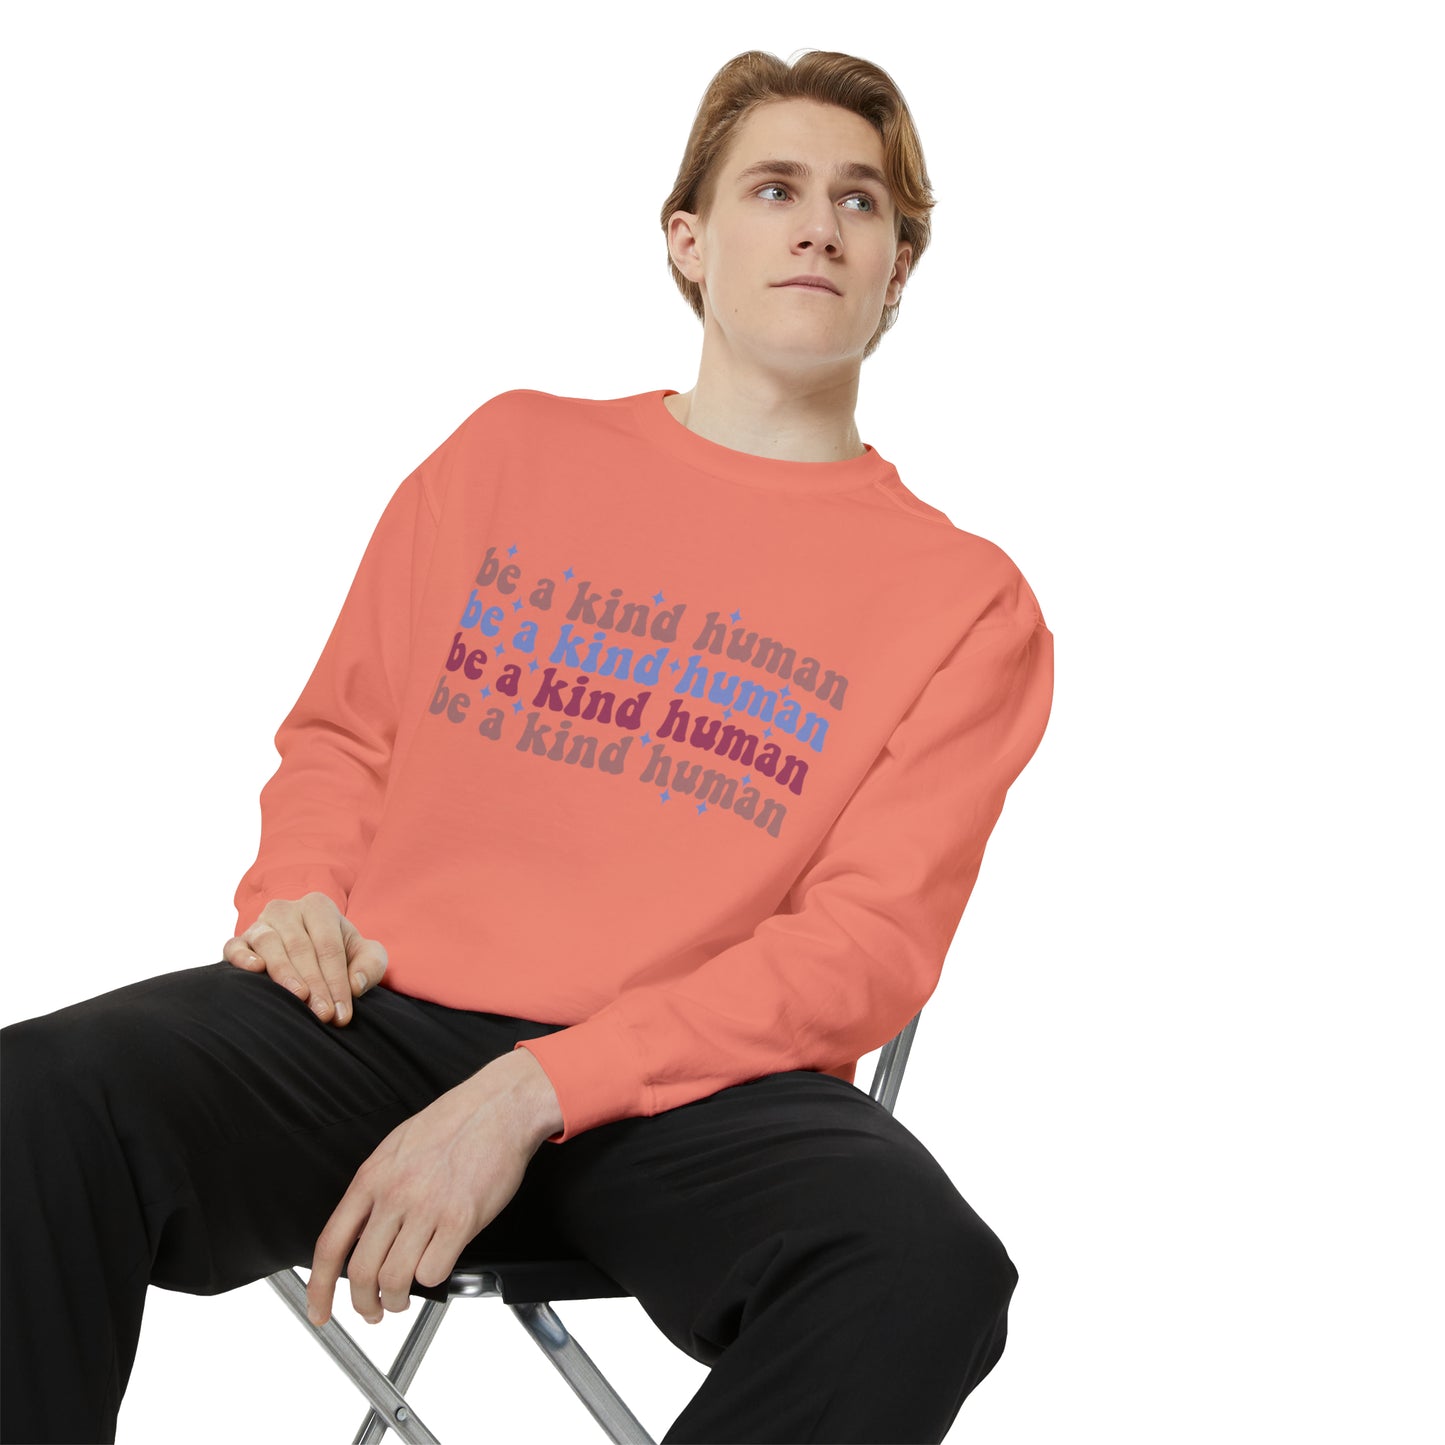 Be a kind Human Sweatshirt | Retro Sweatshirt